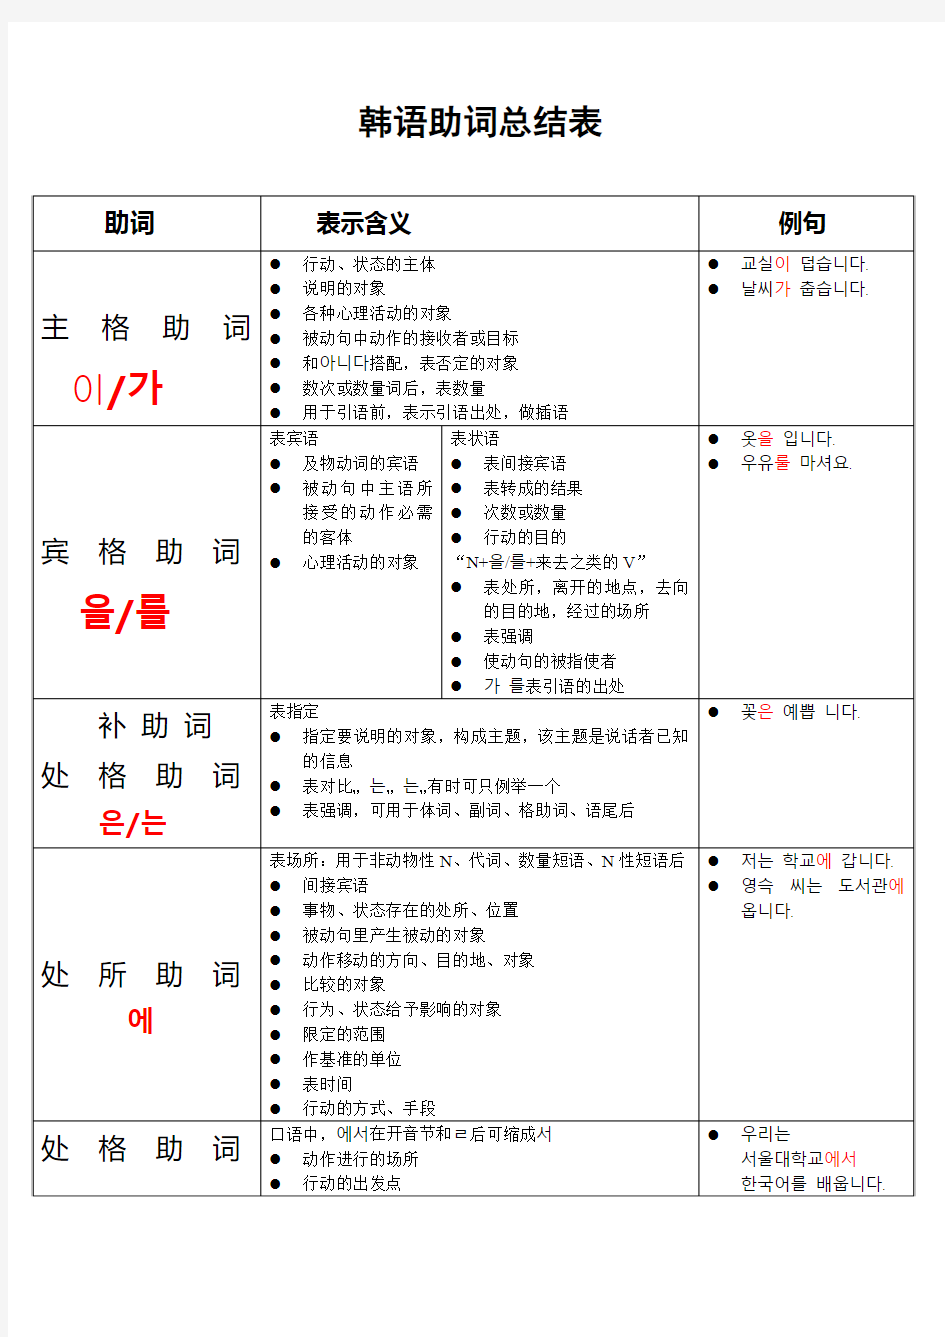 韩语助词总结表表格式